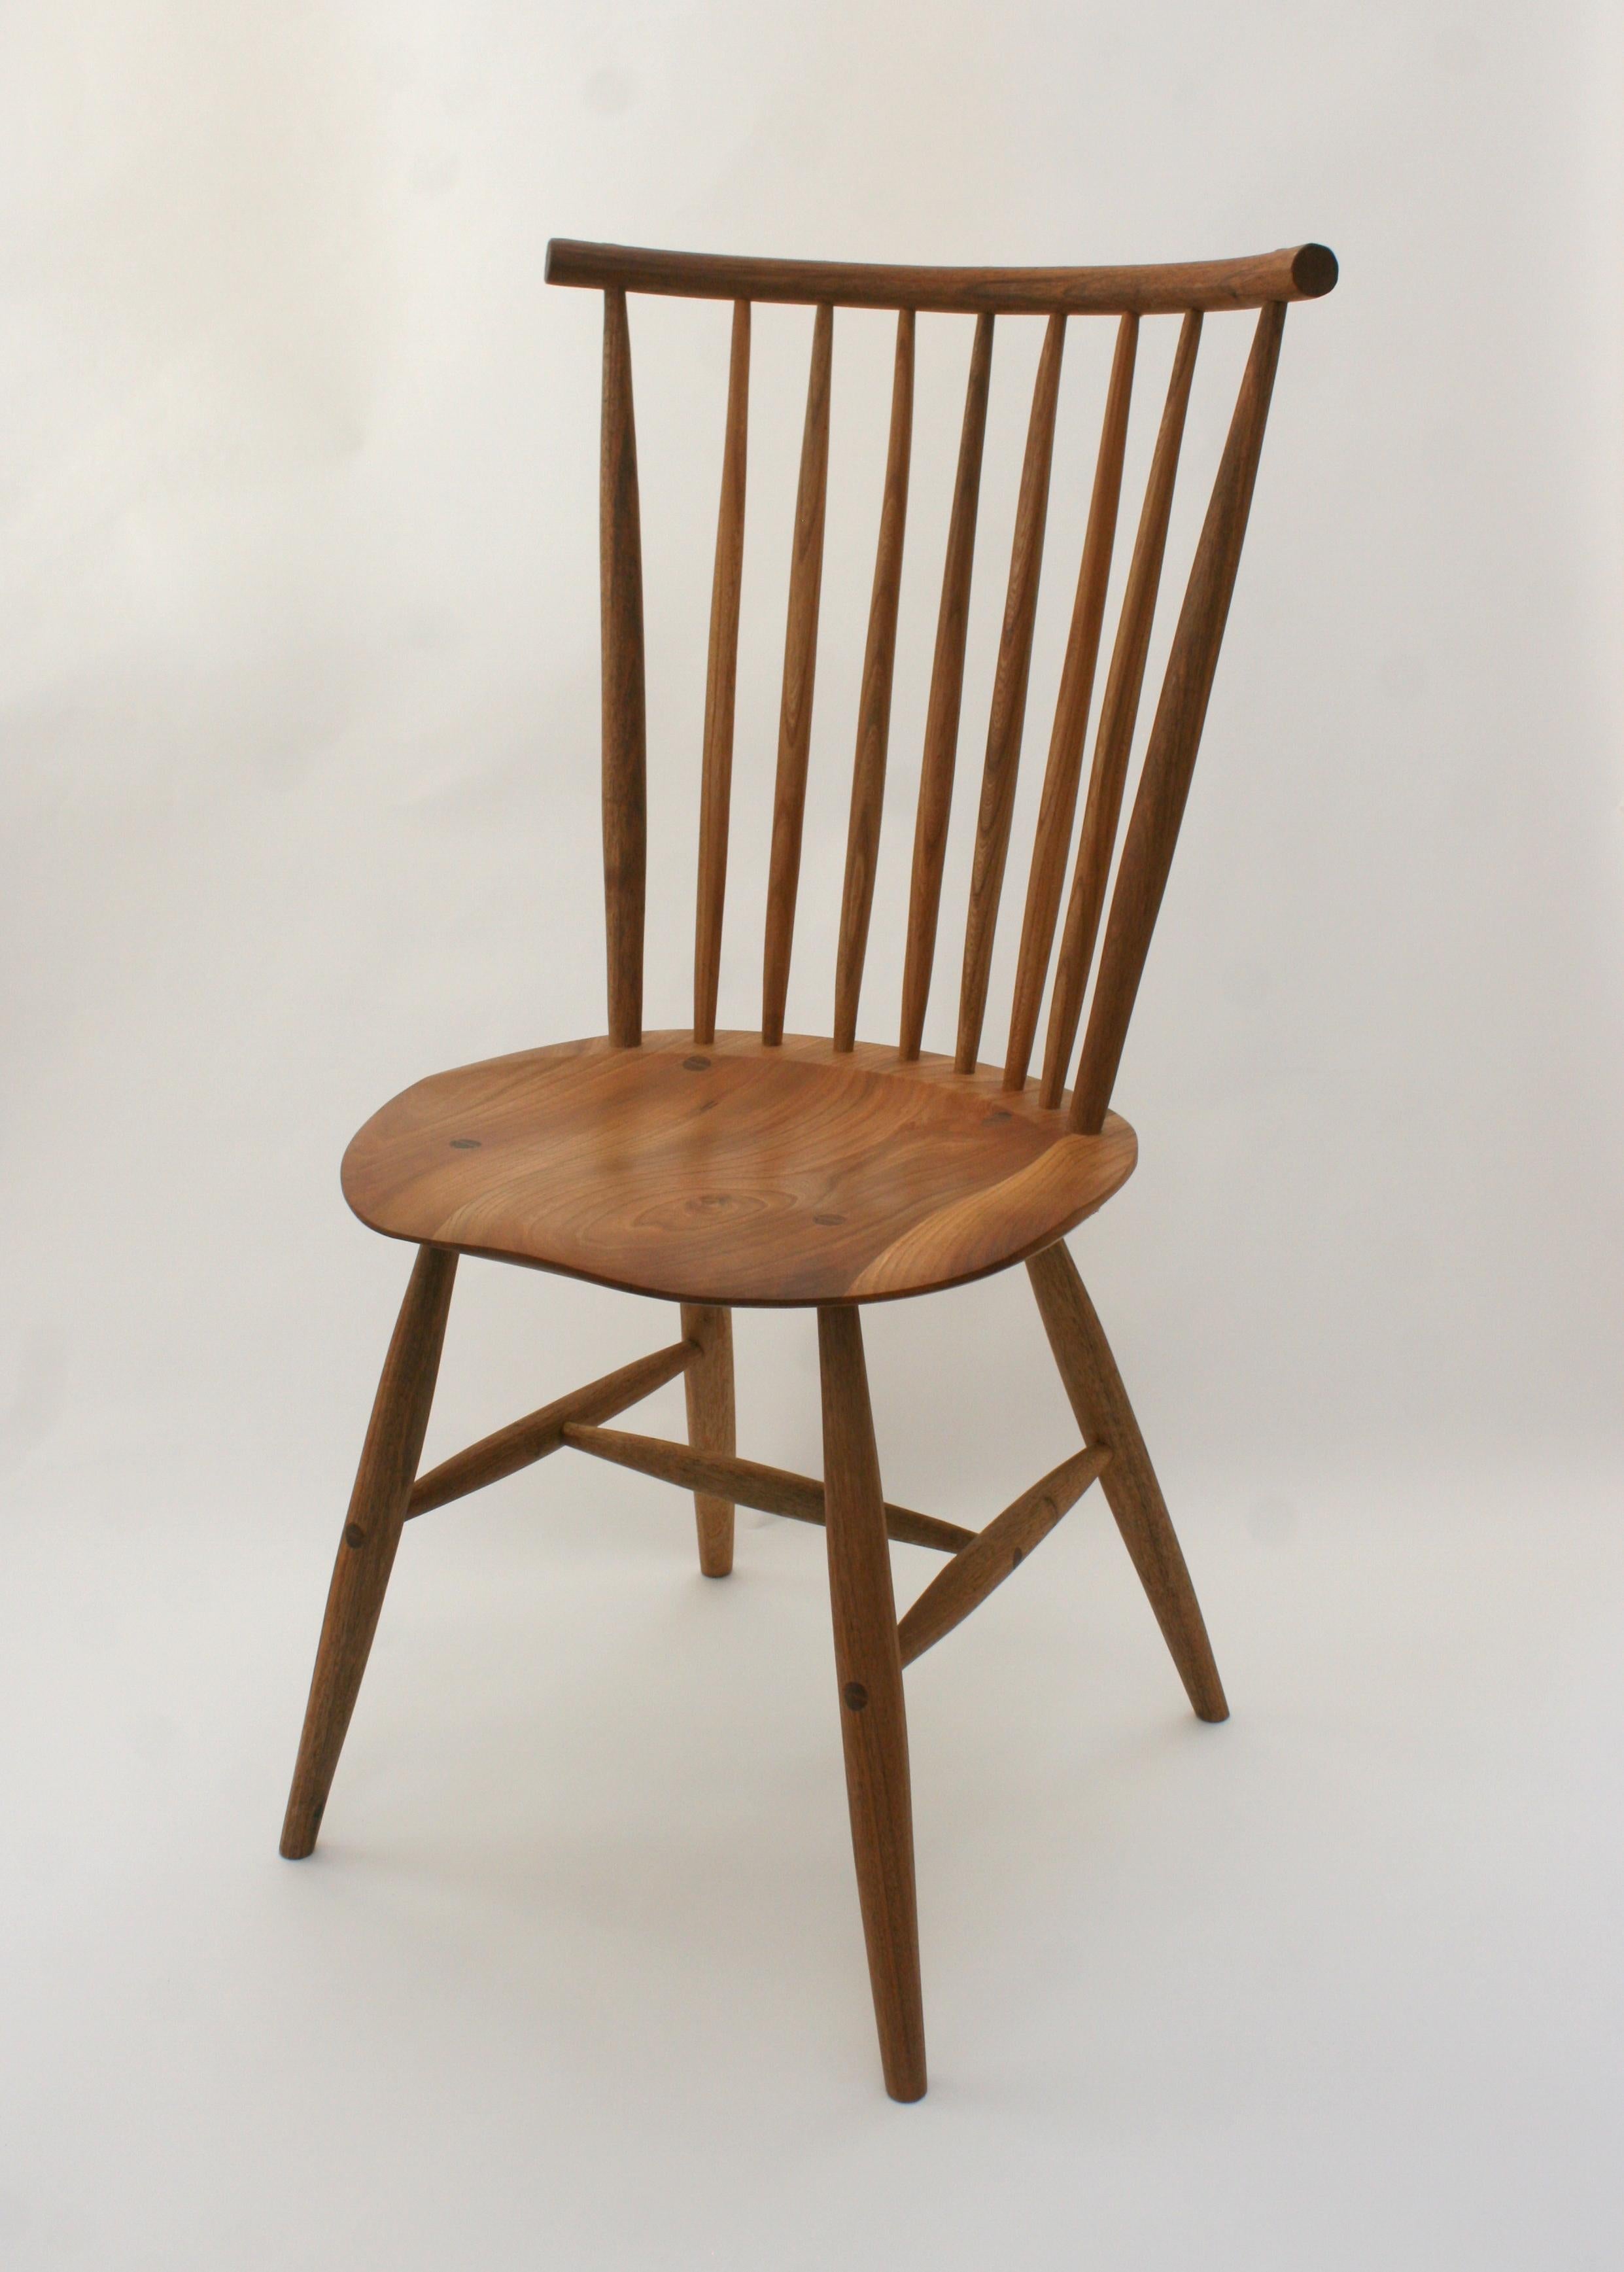 Chaise longue fabriquée sur commande par l'ébéniste allemand Fabian Fischer. Fabriqué dans la tradition et la qualité de l'artisanat des studios américains. Le prix reflète la chaise en chêne, mais elle peut également être fabriquée en cerisier et